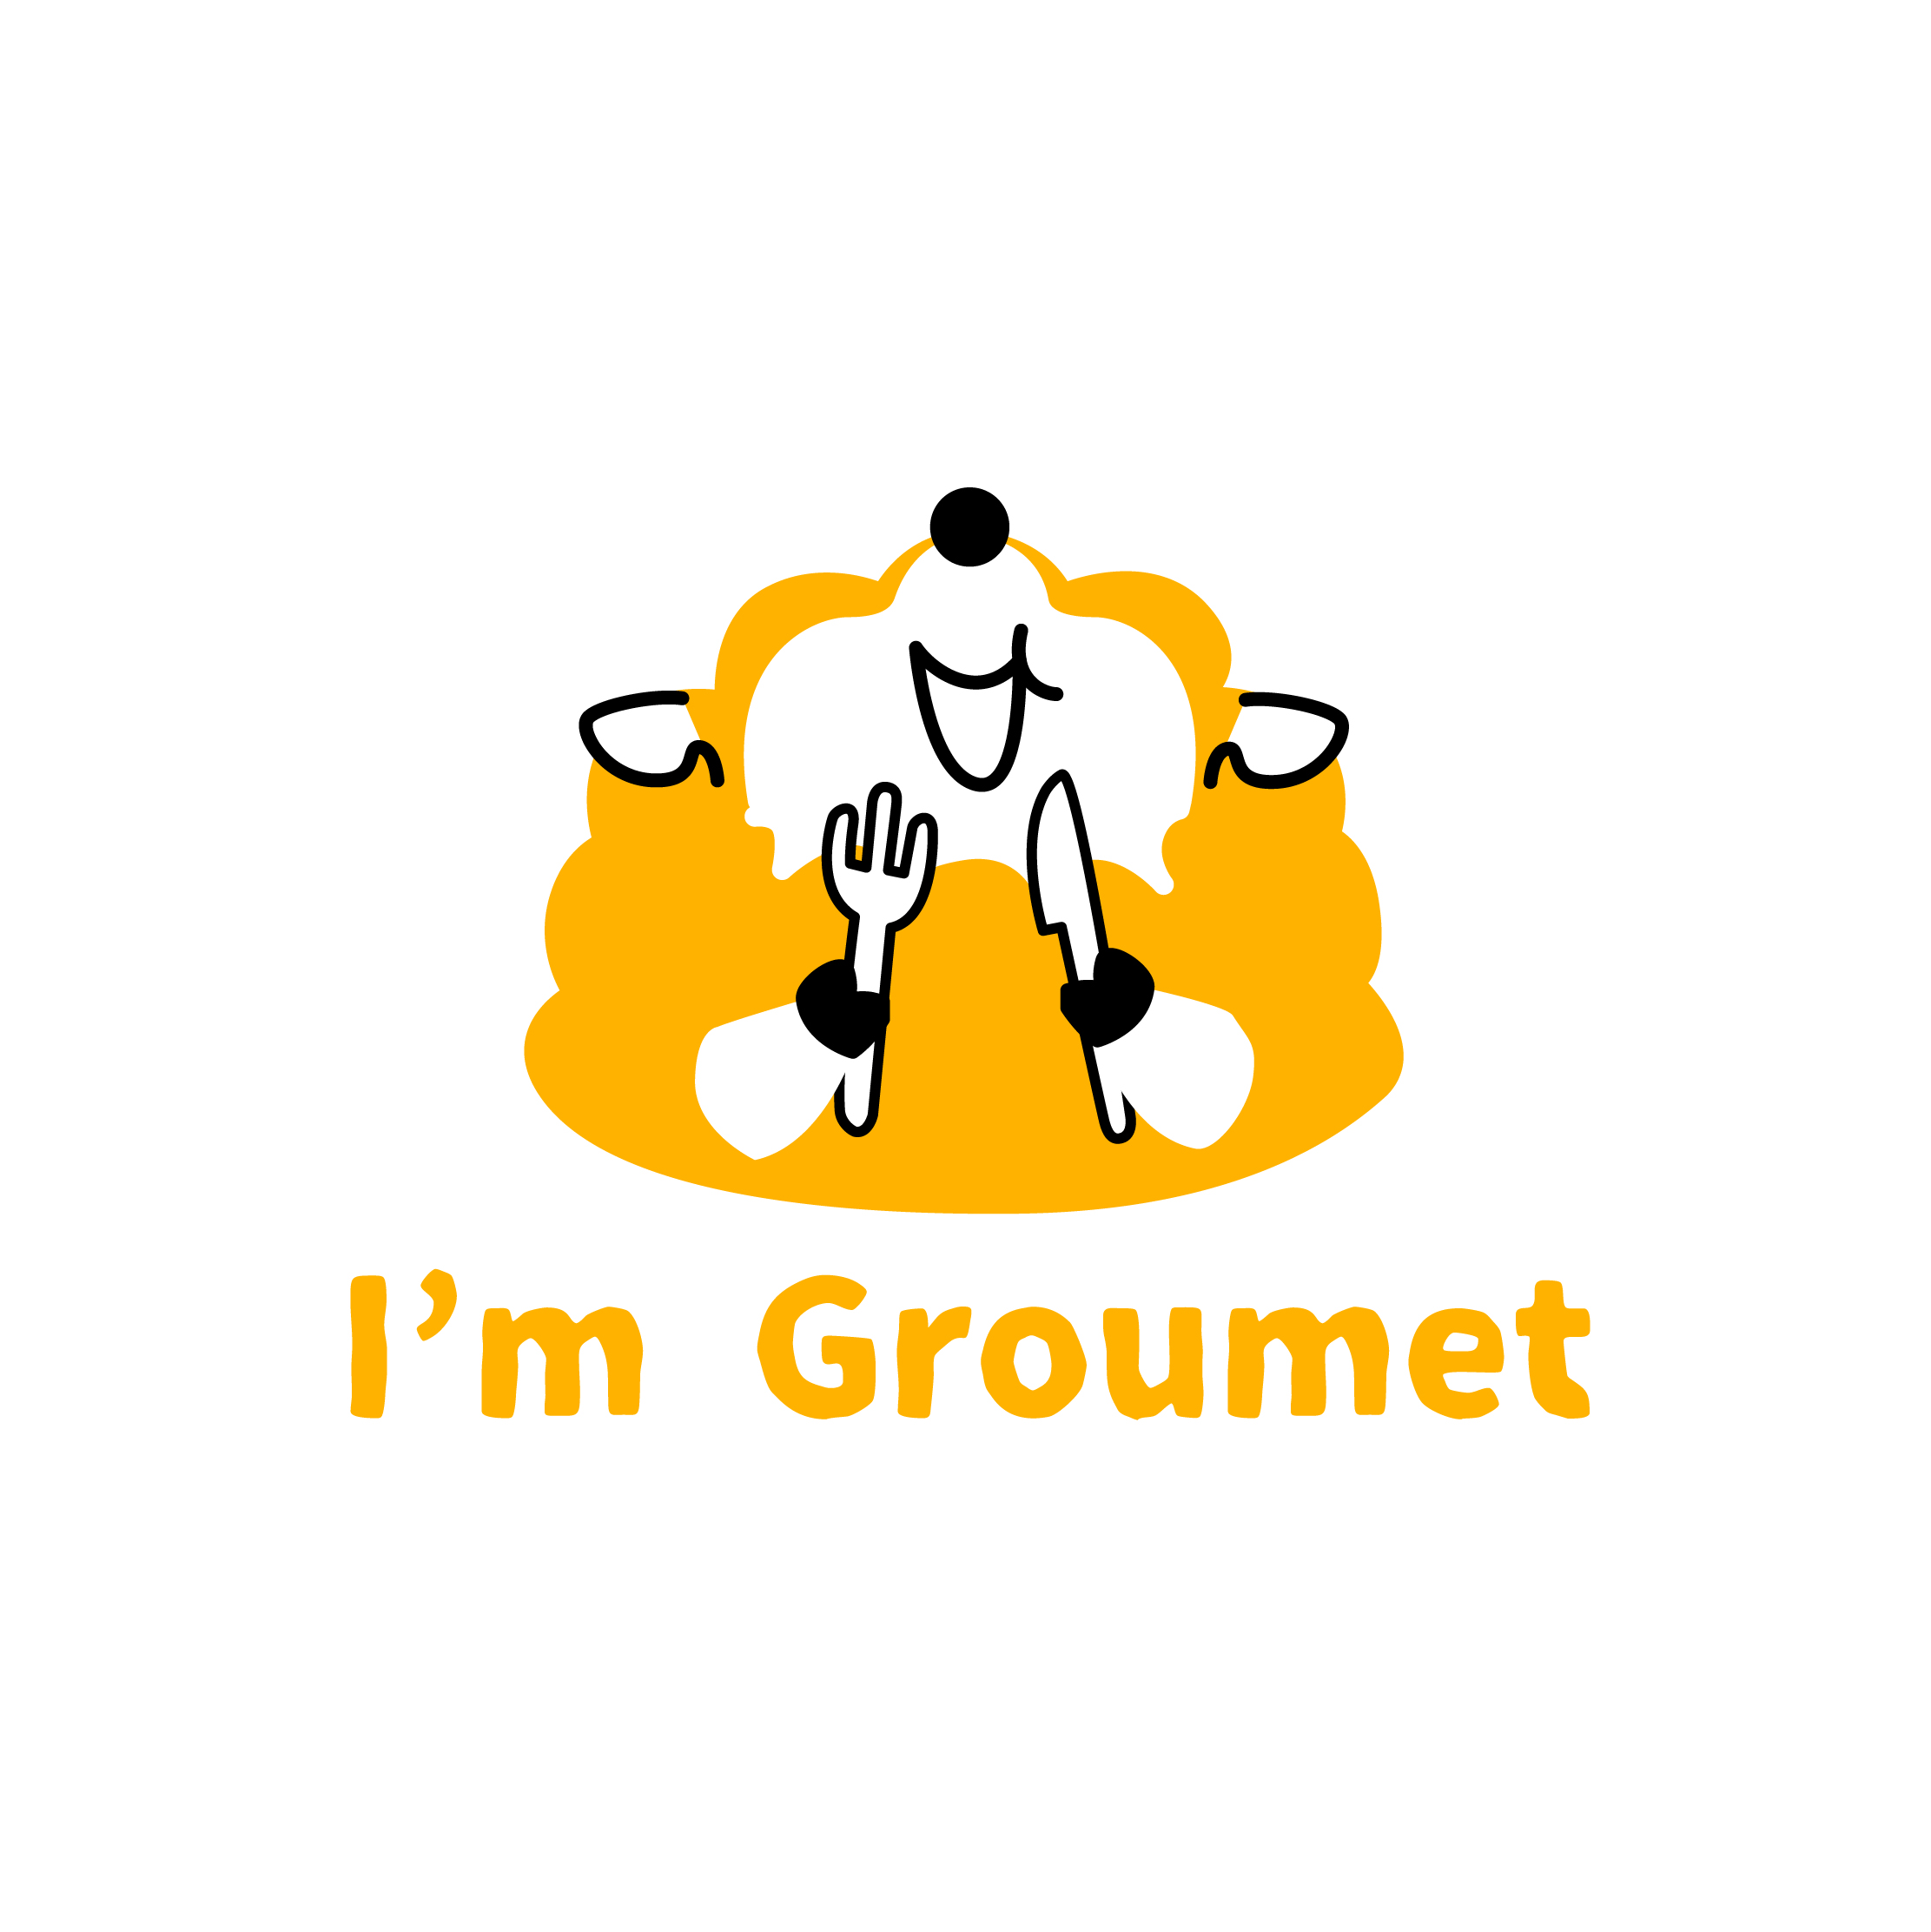 投稿型グルメサイト[ I’m groumet ] 様のロゴ・キャラデザイン